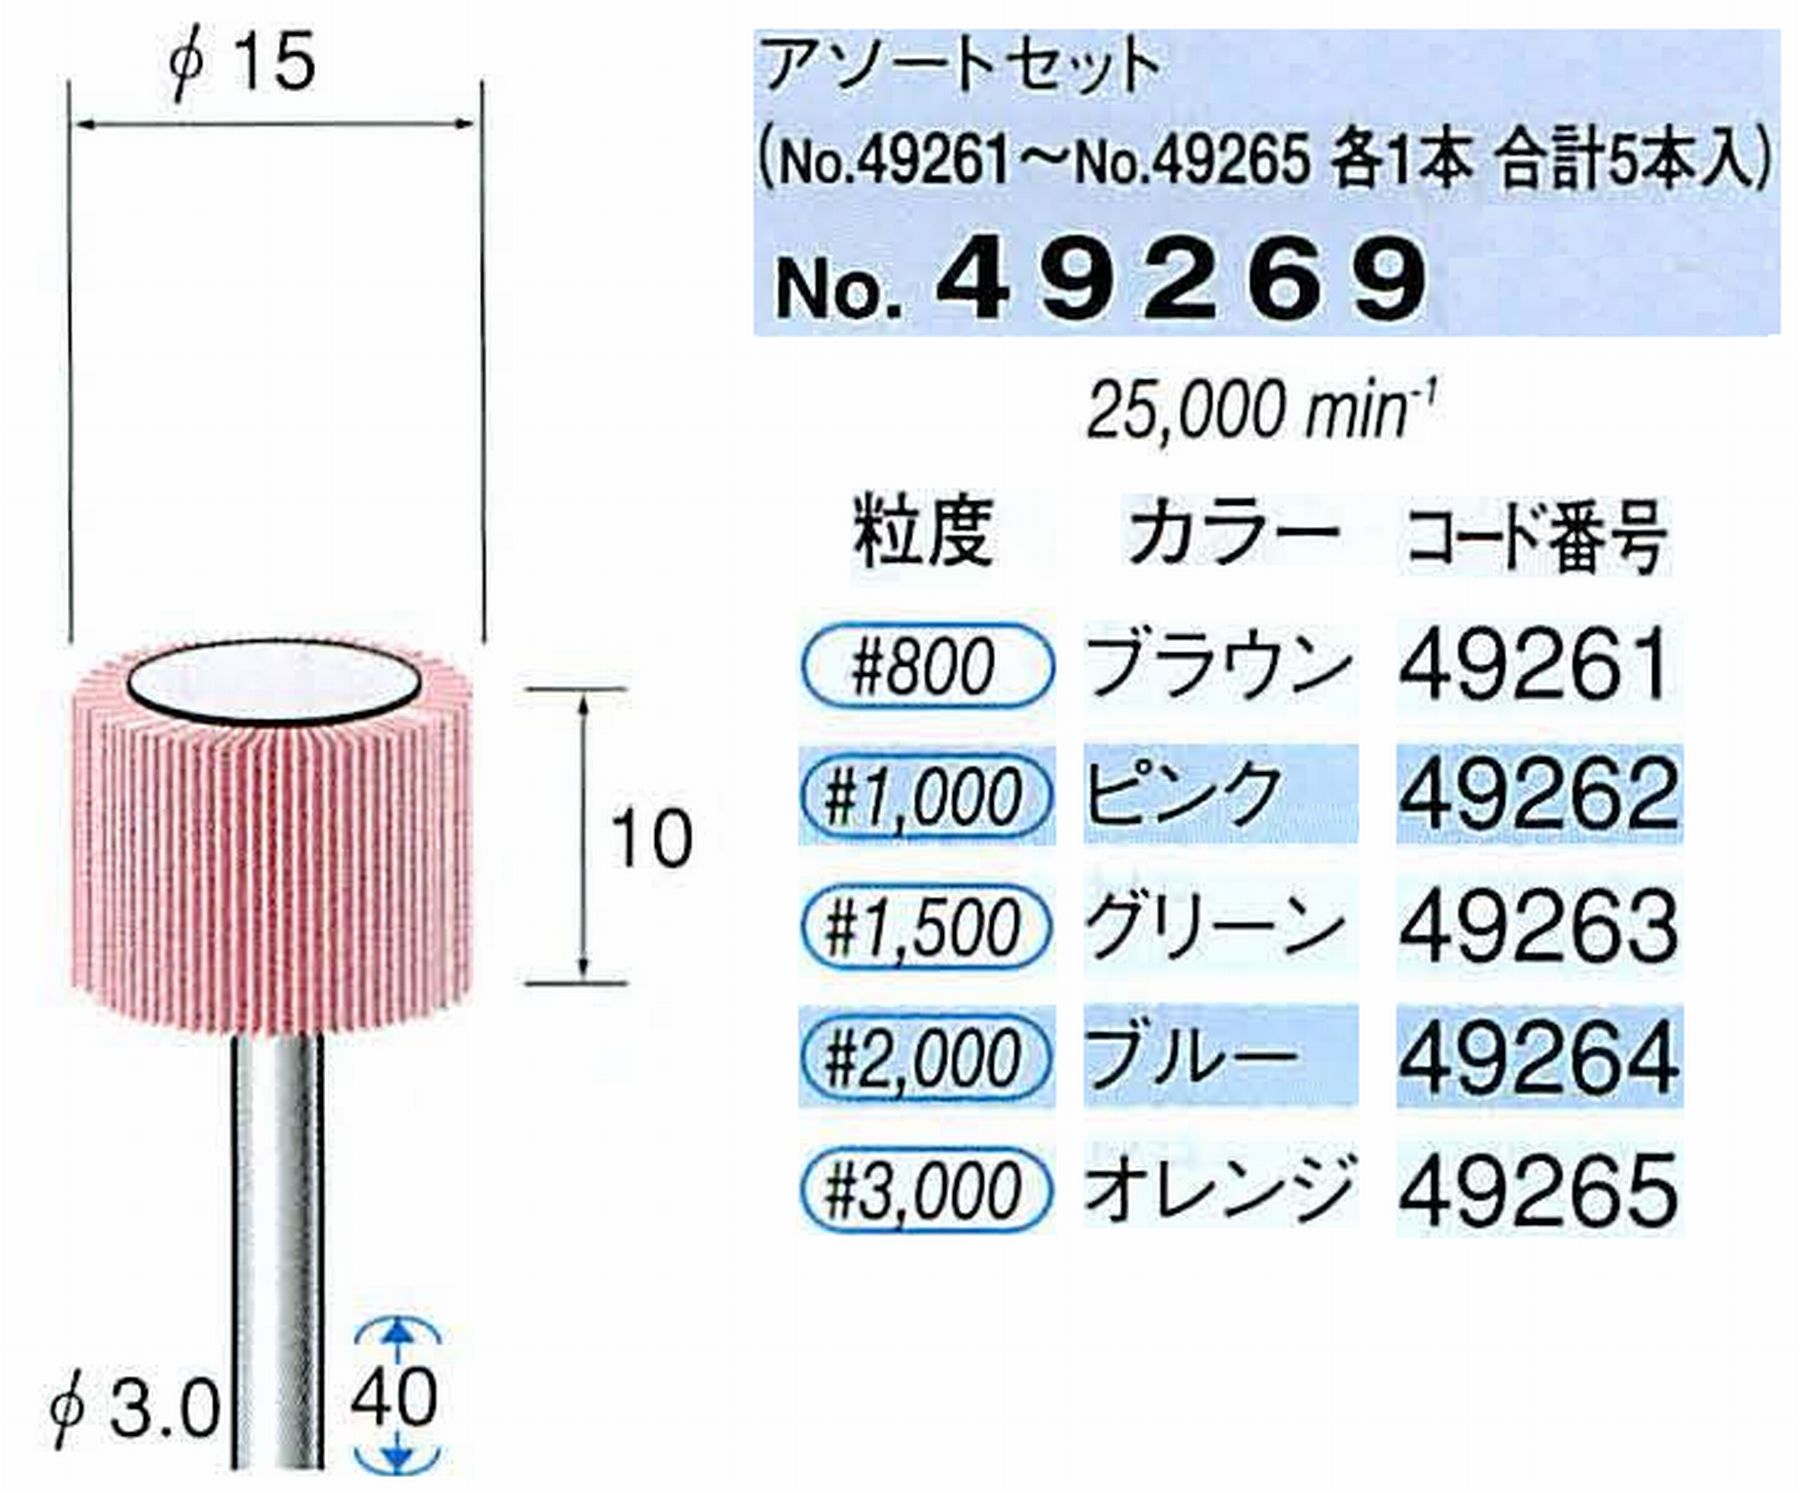 ナカニシ/NAKANISHI ファイン フラップサンダーアソートセット 軸径(シャンク)φ3.0mm 49269